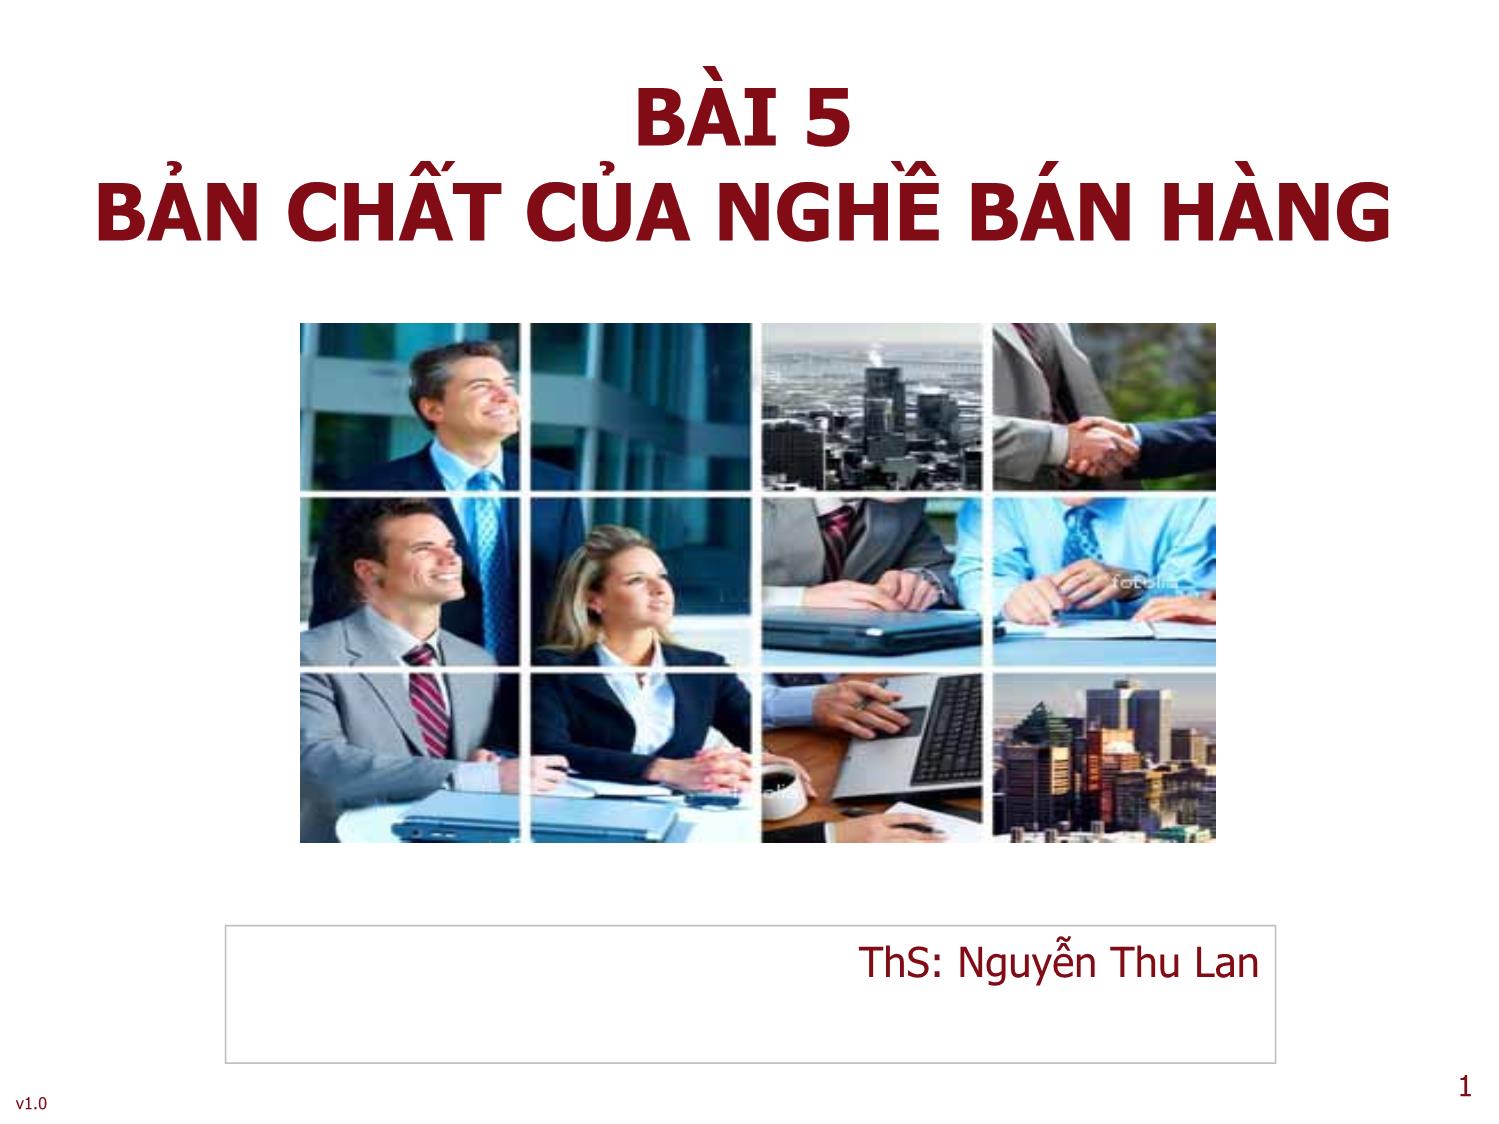 Bài giảng Quản trị bán hàng - Bài 5: Bản chất của nghề bán hàng - Nguyễn Thu Lan trang 1